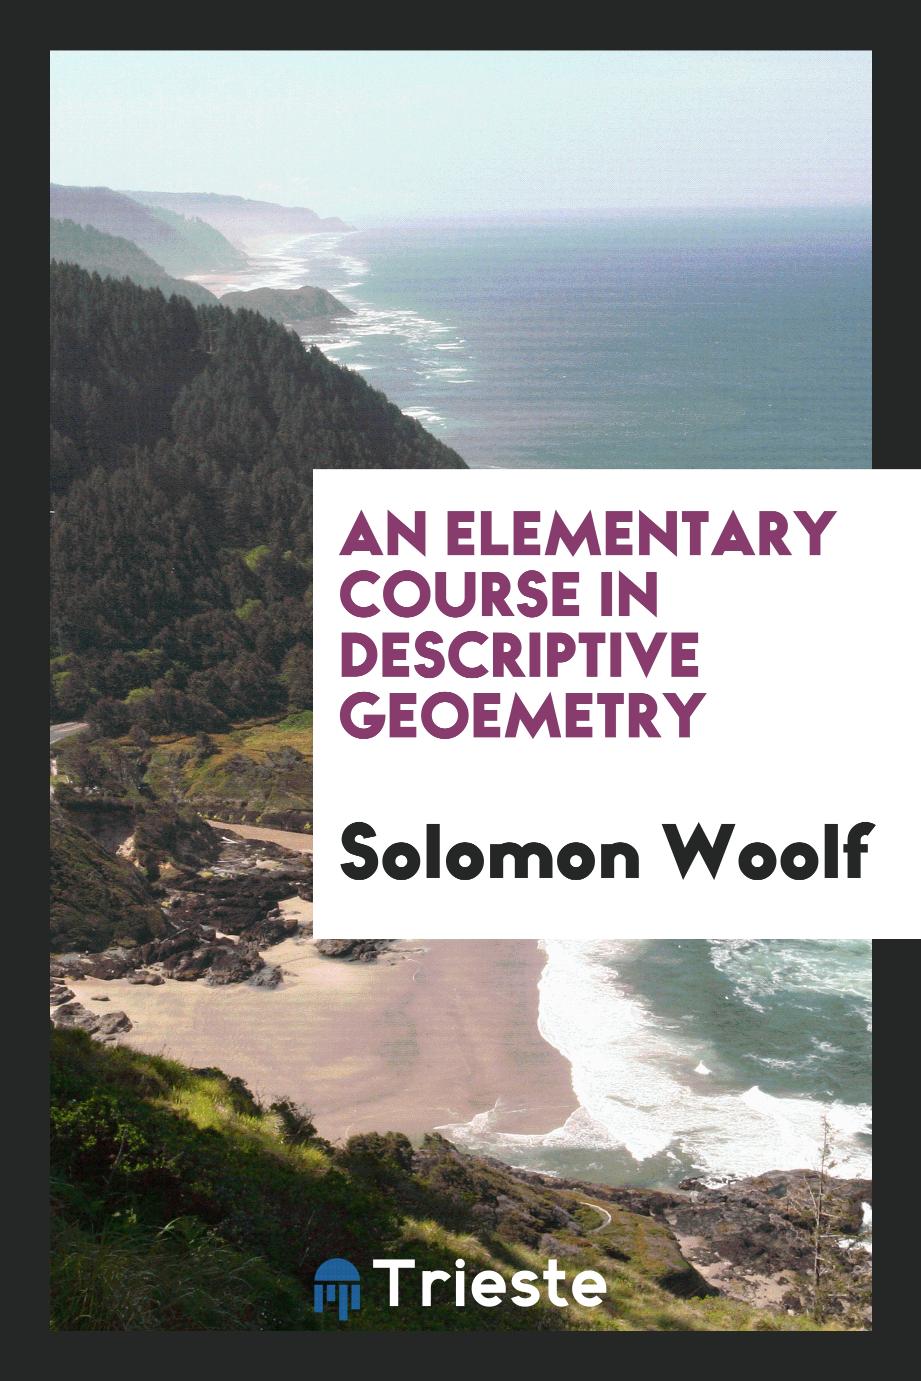 An Elementary Course in Descriptive Geoemetry